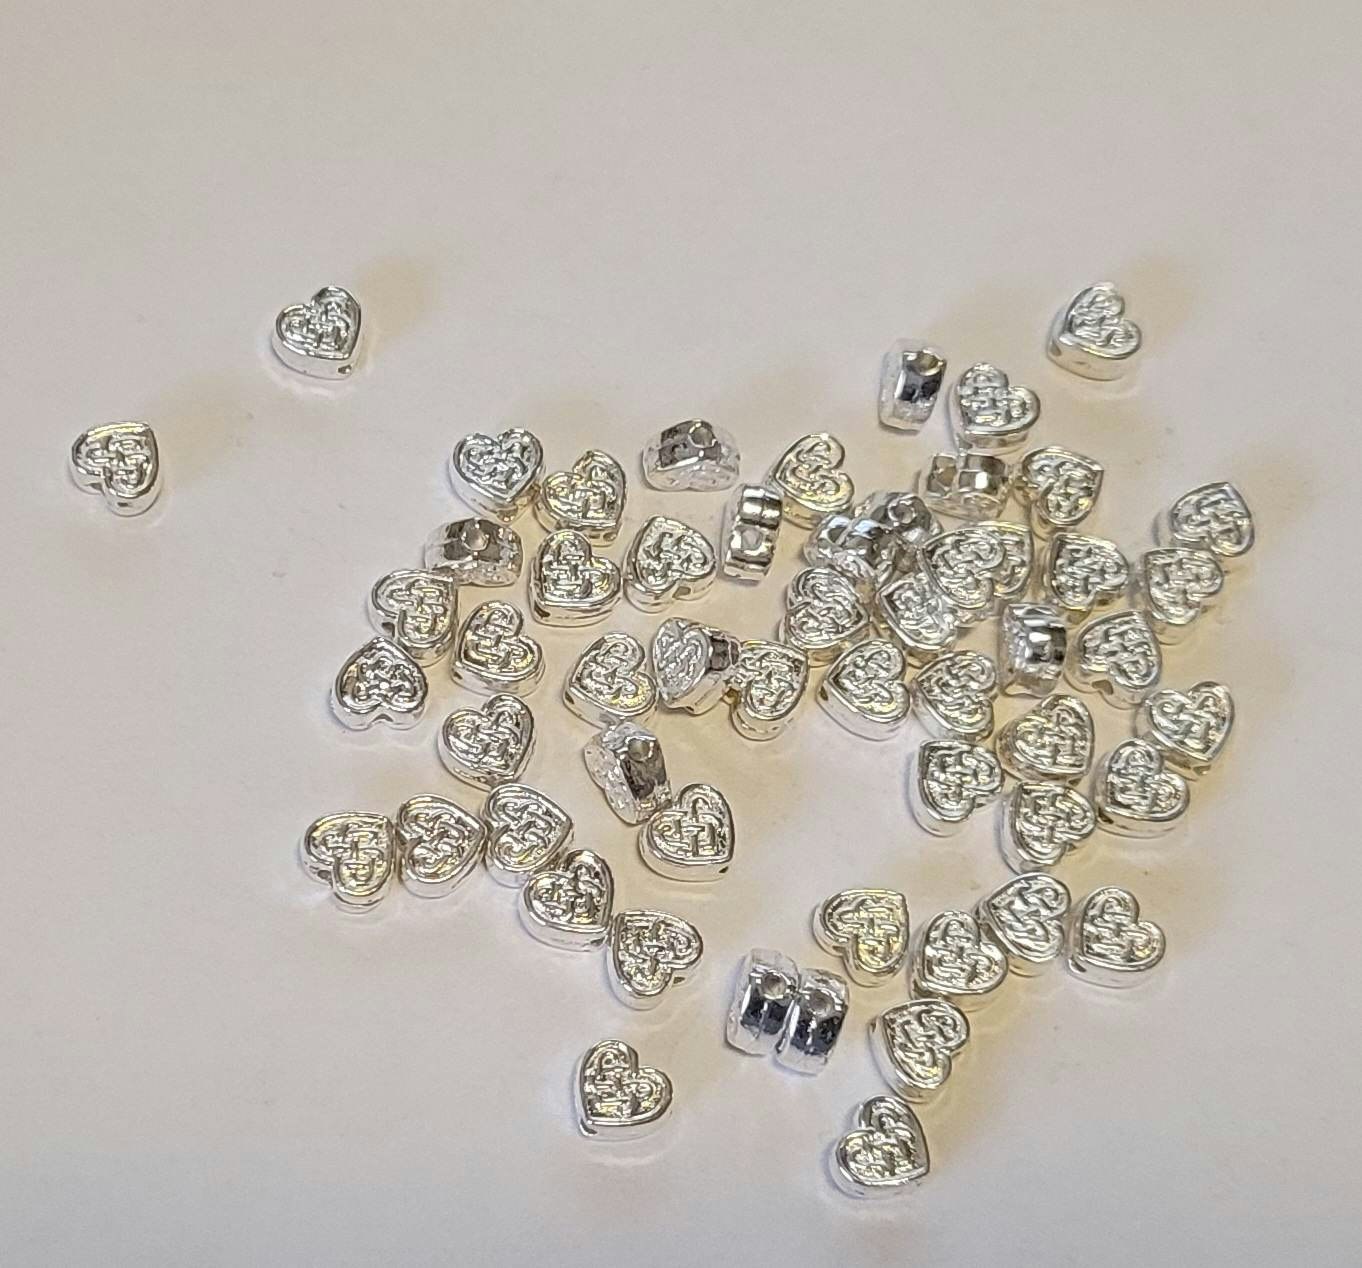 Mellandels pärlor metall hjärtan 100 stk